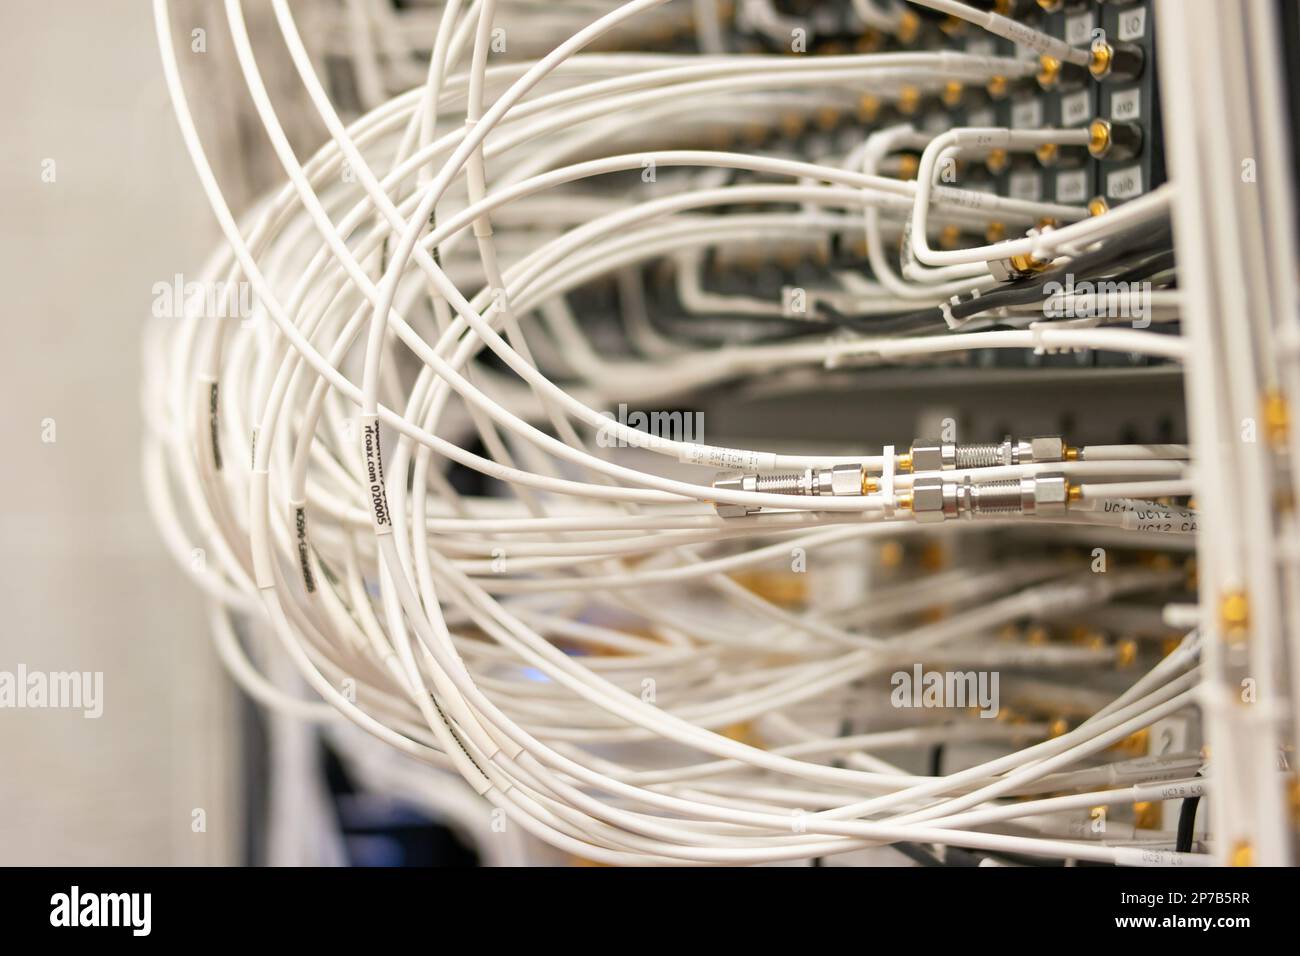 Elektronische Signalverarbeitungsgeräte in einem Wissenschaftslabor. Viele angeschlossene Kabel in Steckdosen. Organisiert, ordentlich, nicht chaotisch. Nahaufnahme, keine Leute Stockfoto